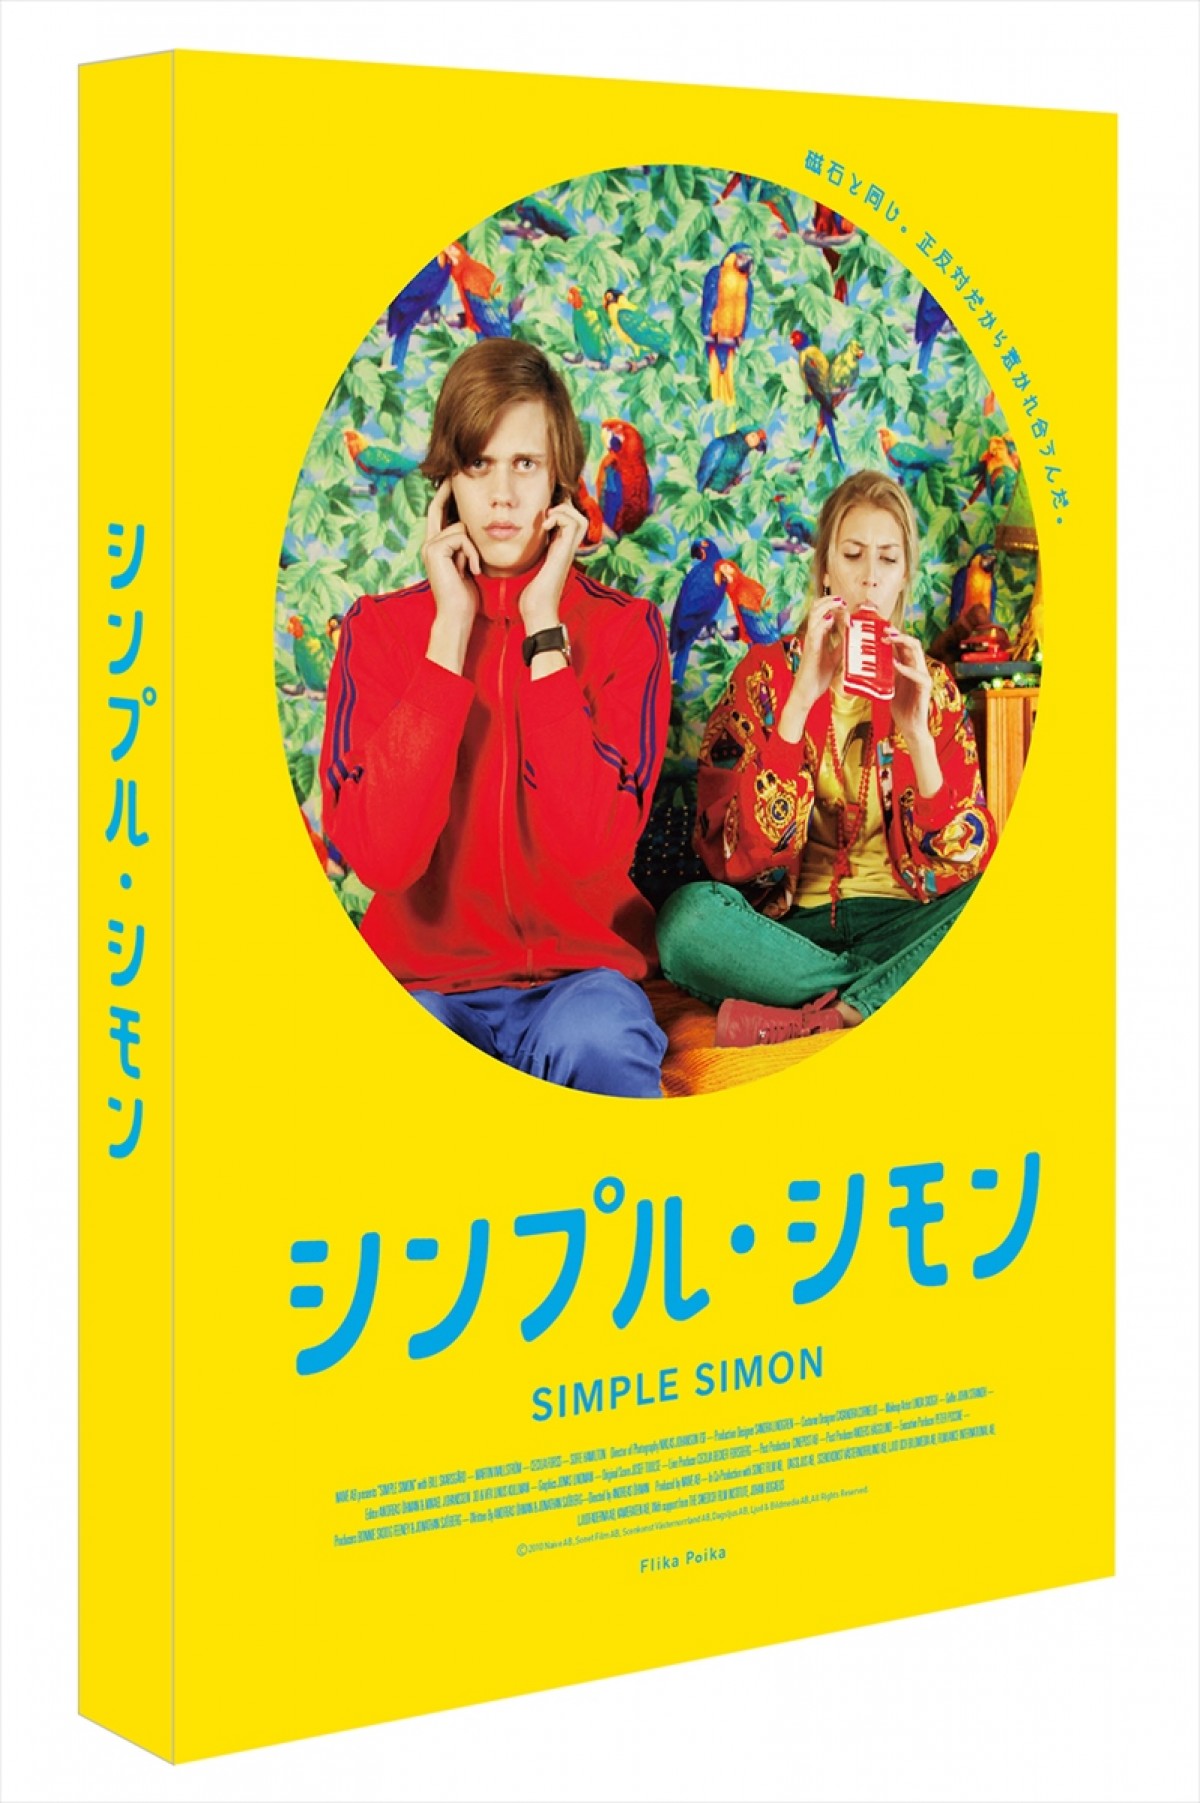 森川智之、日野聡、中村千絵らが日本語吹替え　『シンプル・シモン』DVD発売